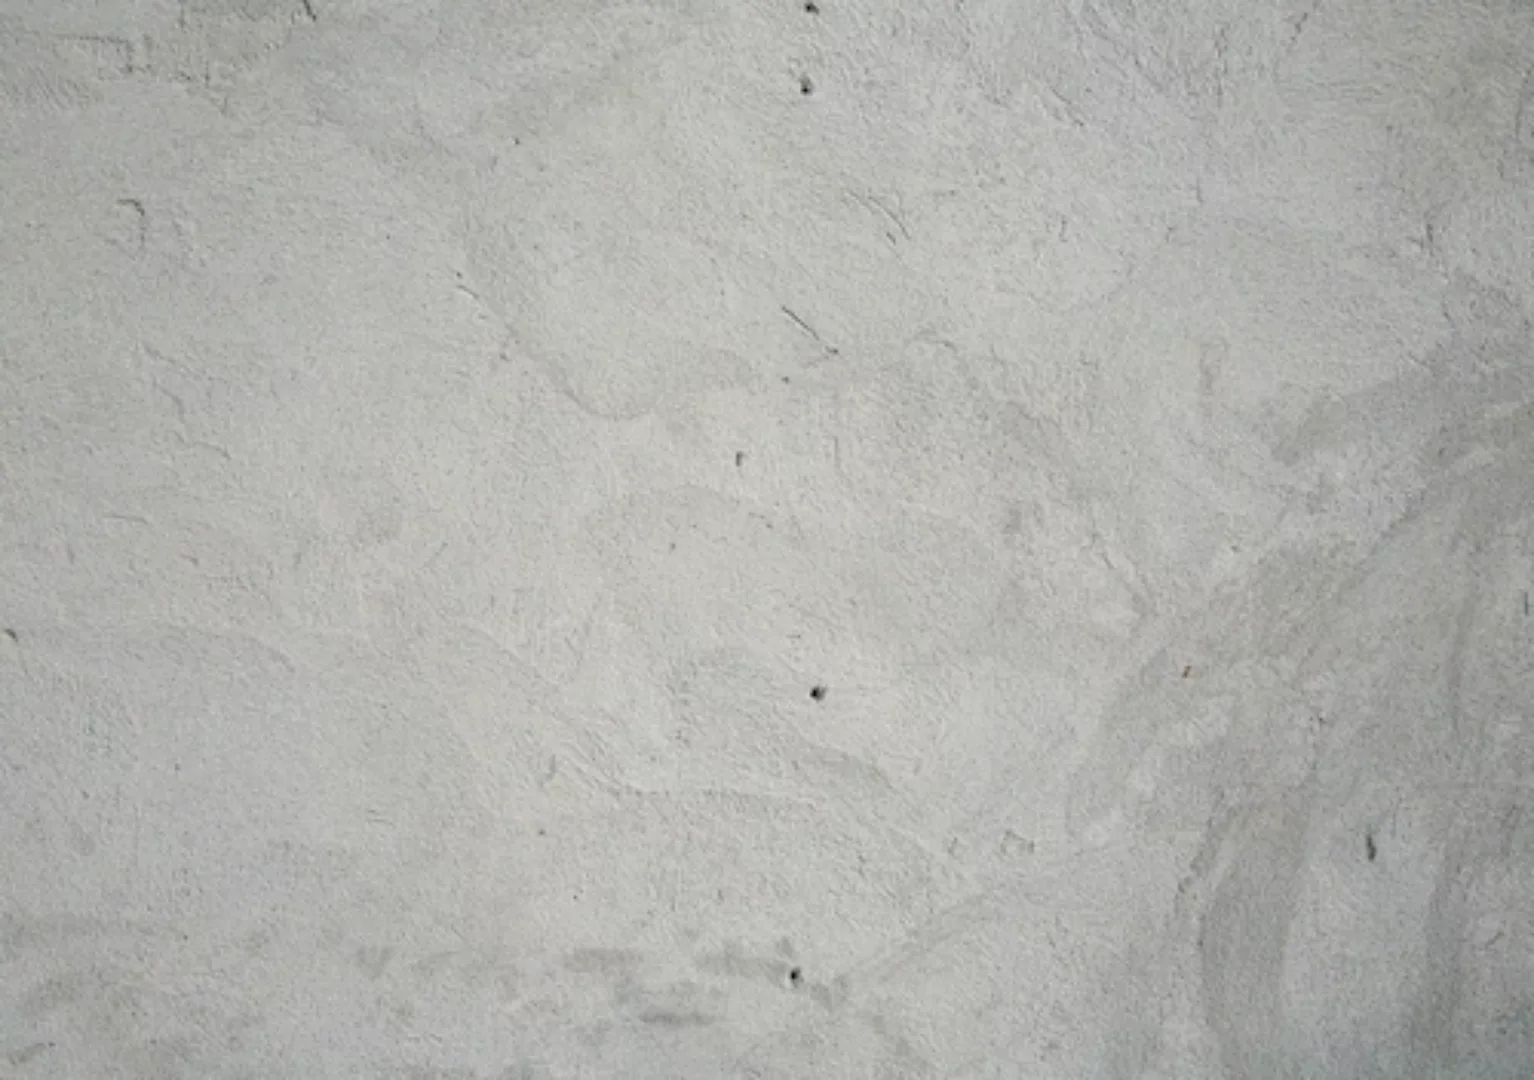 Papermoon Fototapete »Grunge Cement Wall« günstig online kaufen